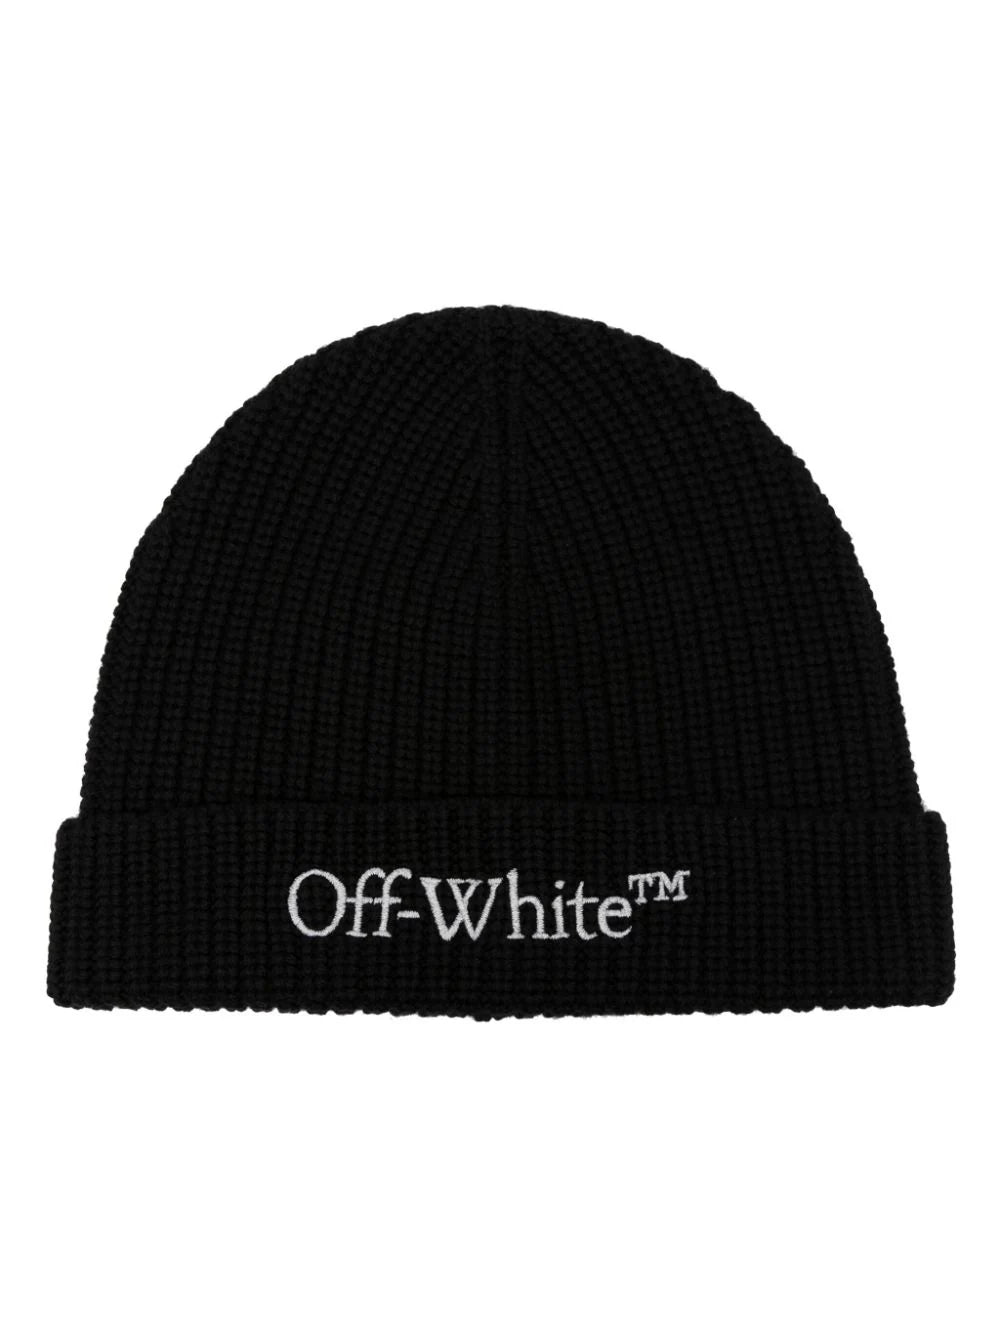 OFF-WHITE MEN Bookish Logo Knit Beanie Black/White - MAISONDEFASHION.COM